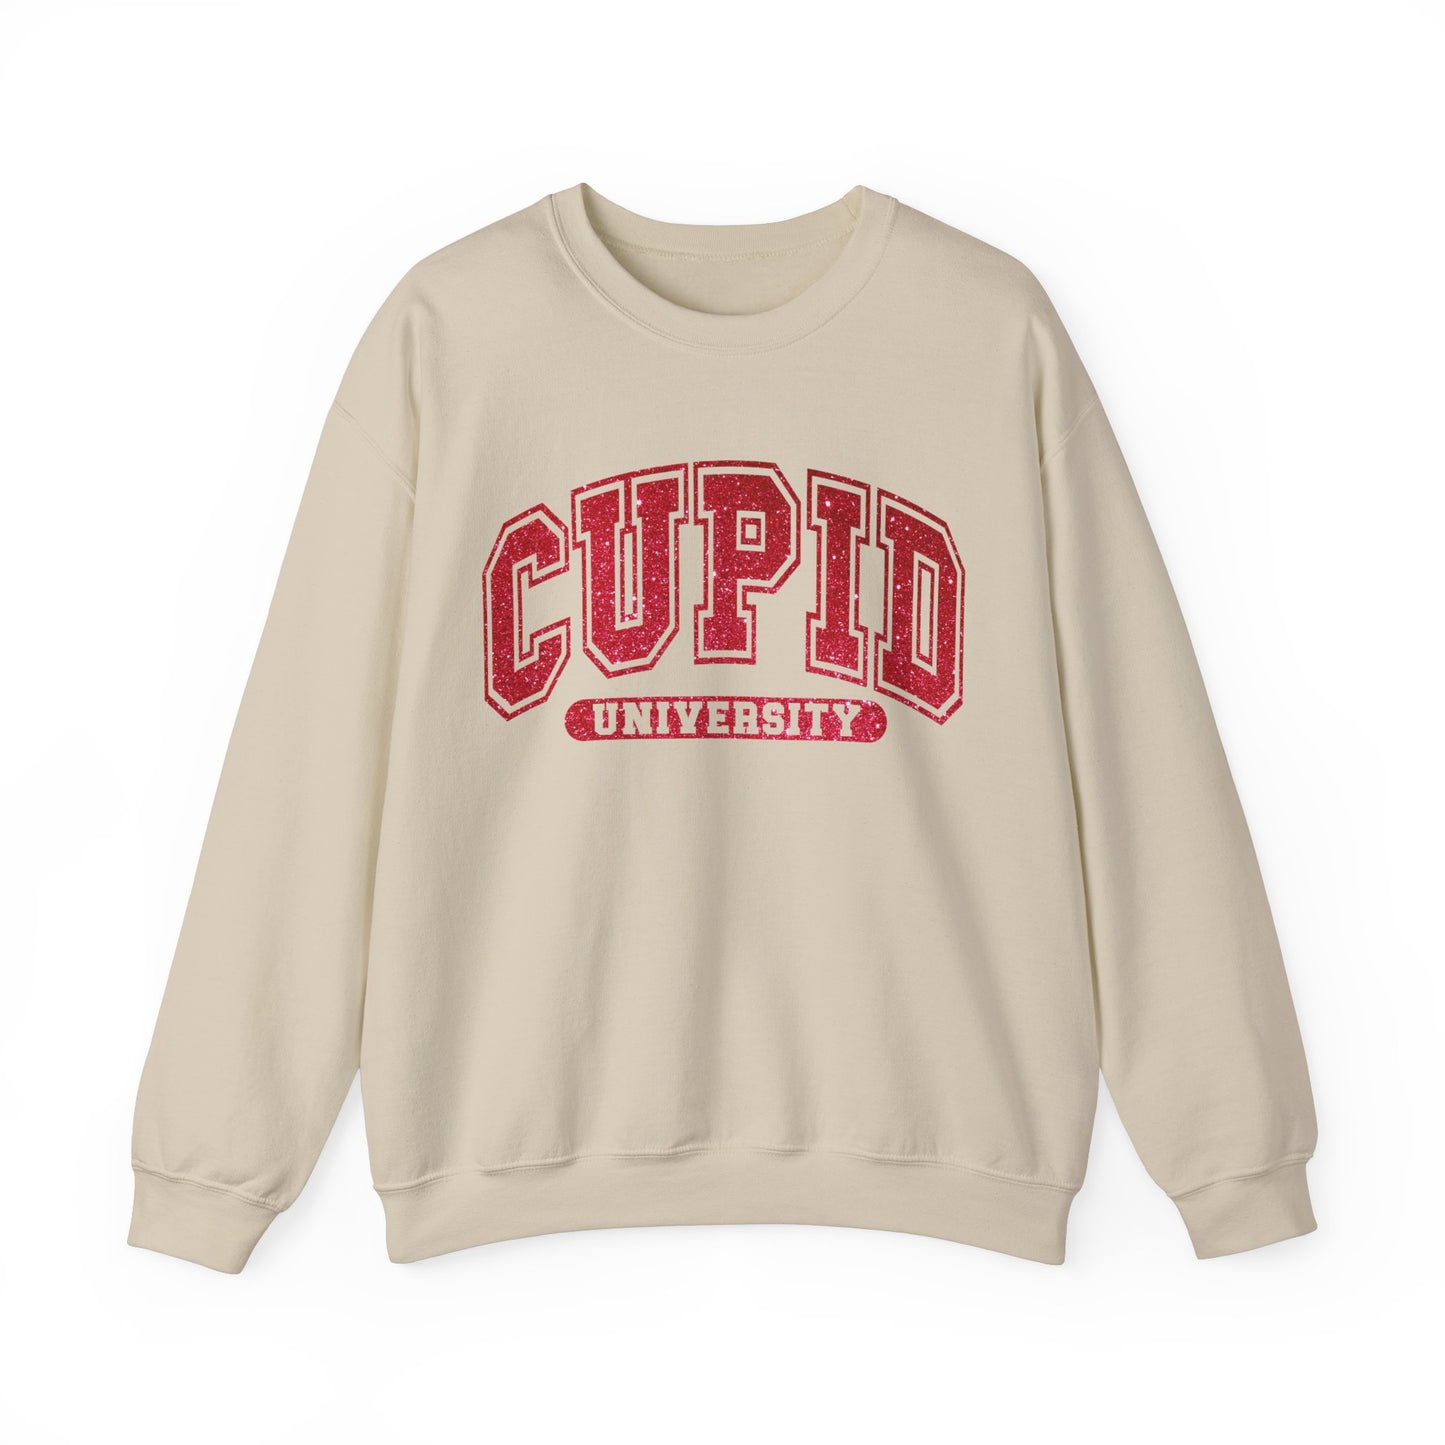 CUPID University Women's Sweatshirt